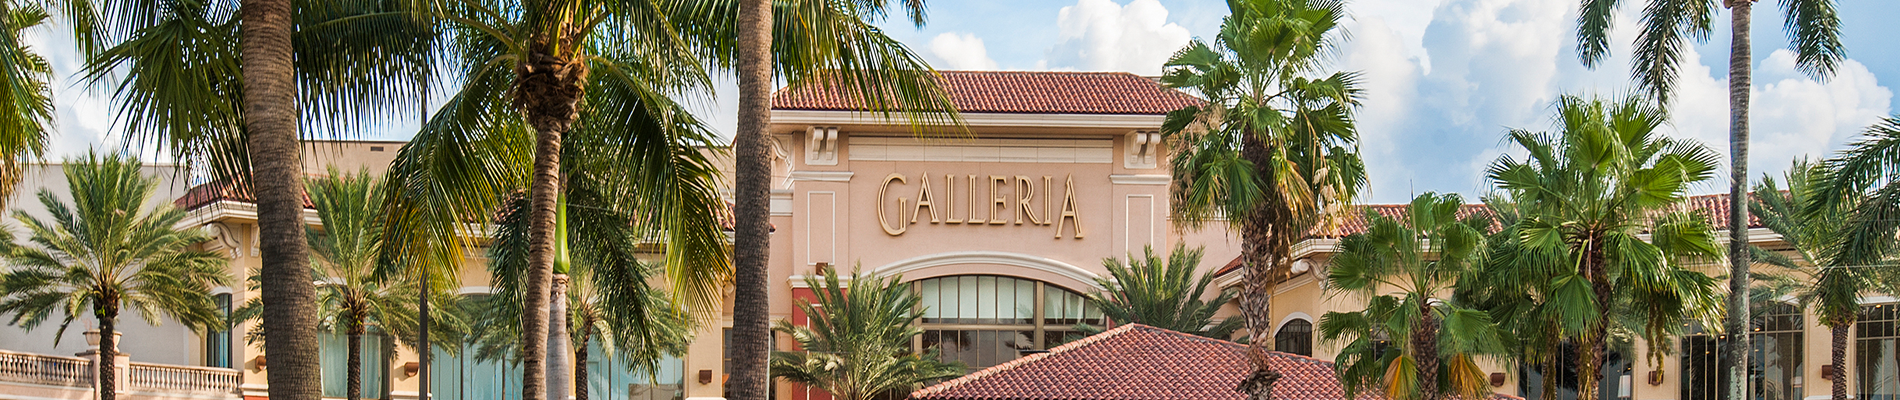 Galleria Fort Lauderdale